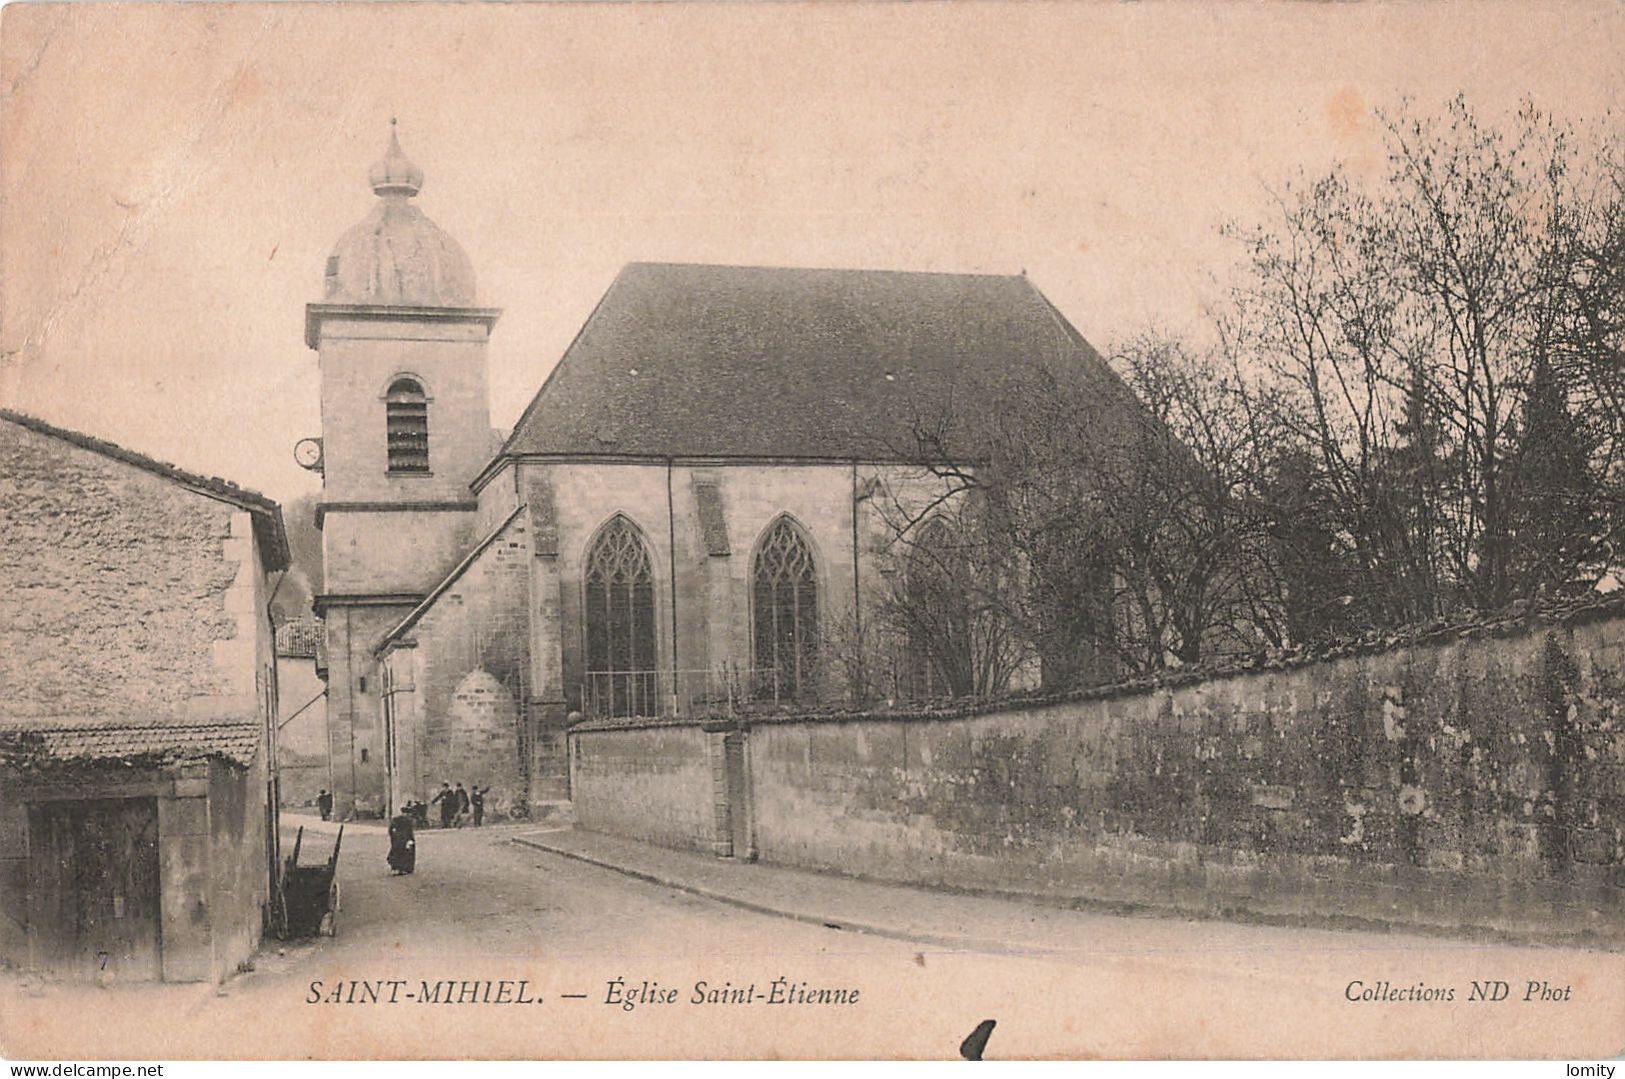 Destockage lot de 21 cartes postales CPA de la Meuse  Commercy Bar le Duc Ligny Barrois Verdun Saint Mihiel